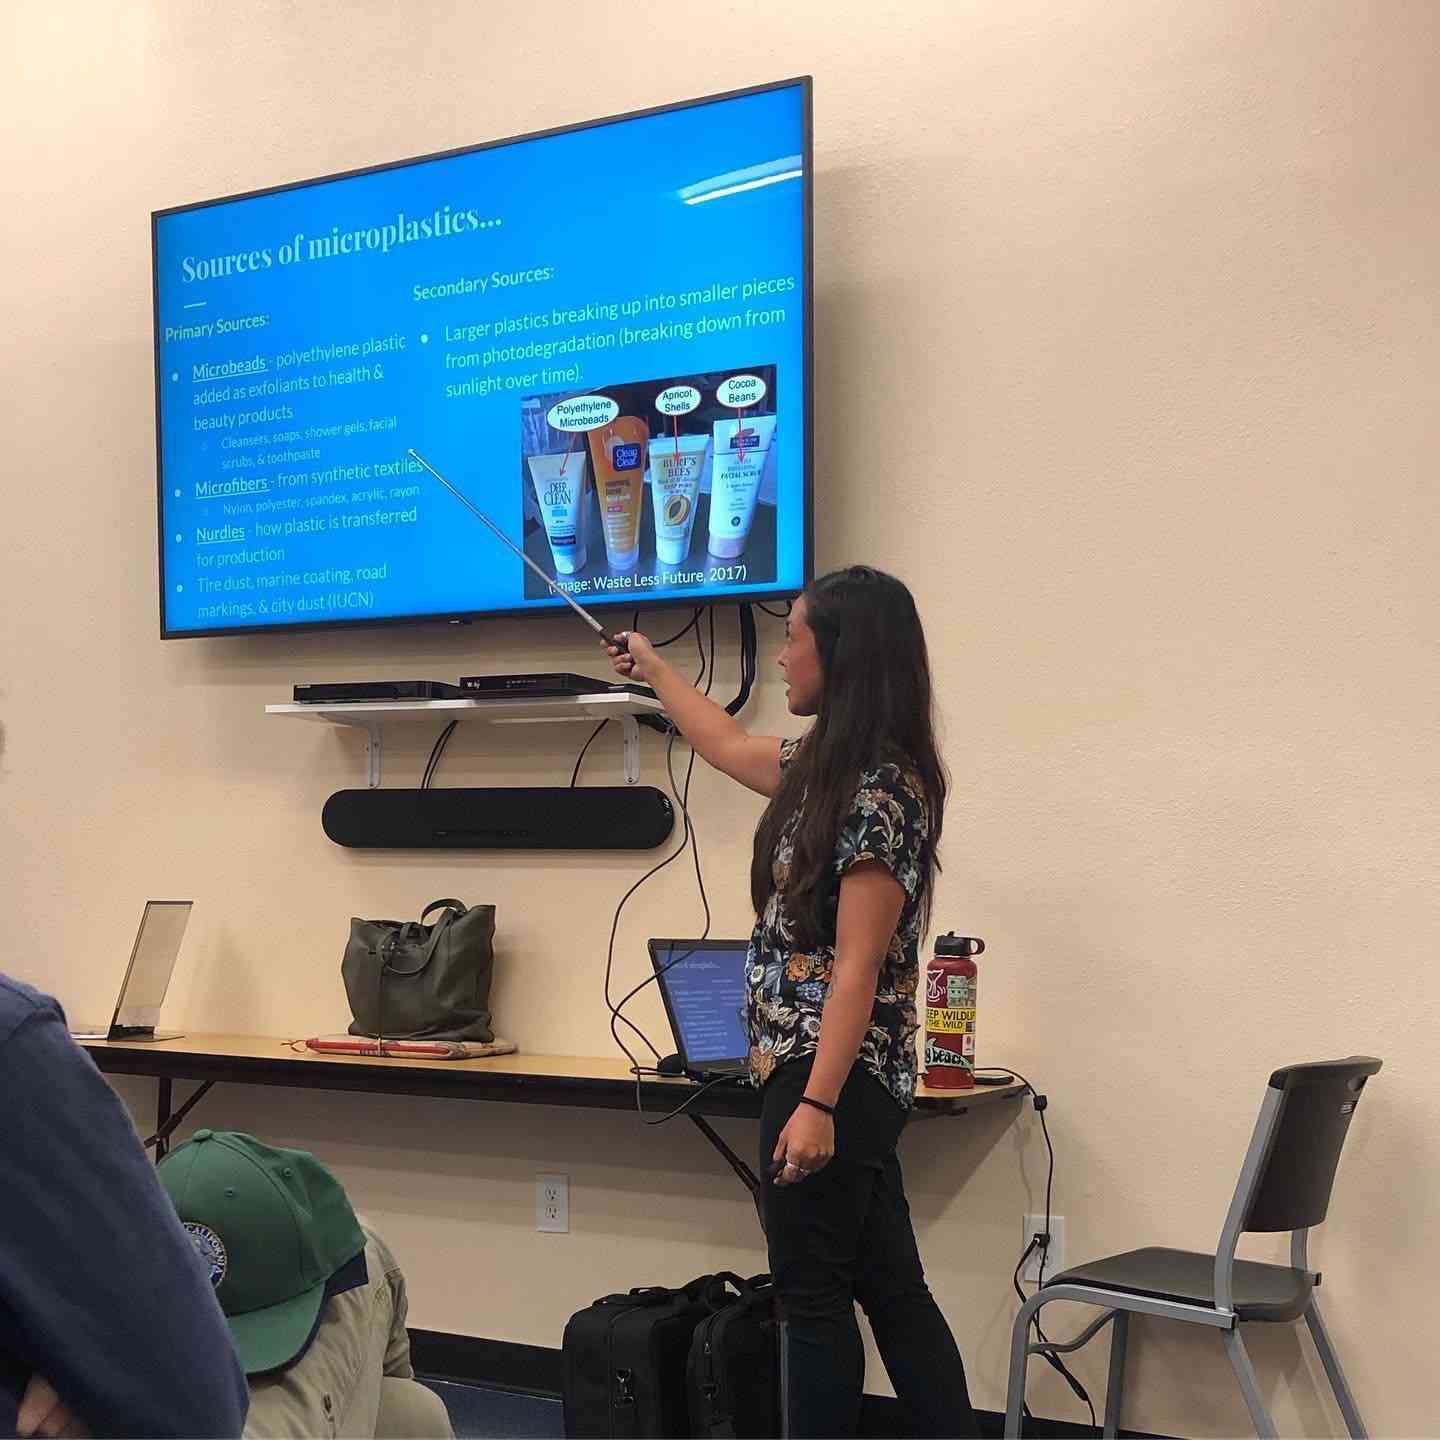 Cristina giving a presentation